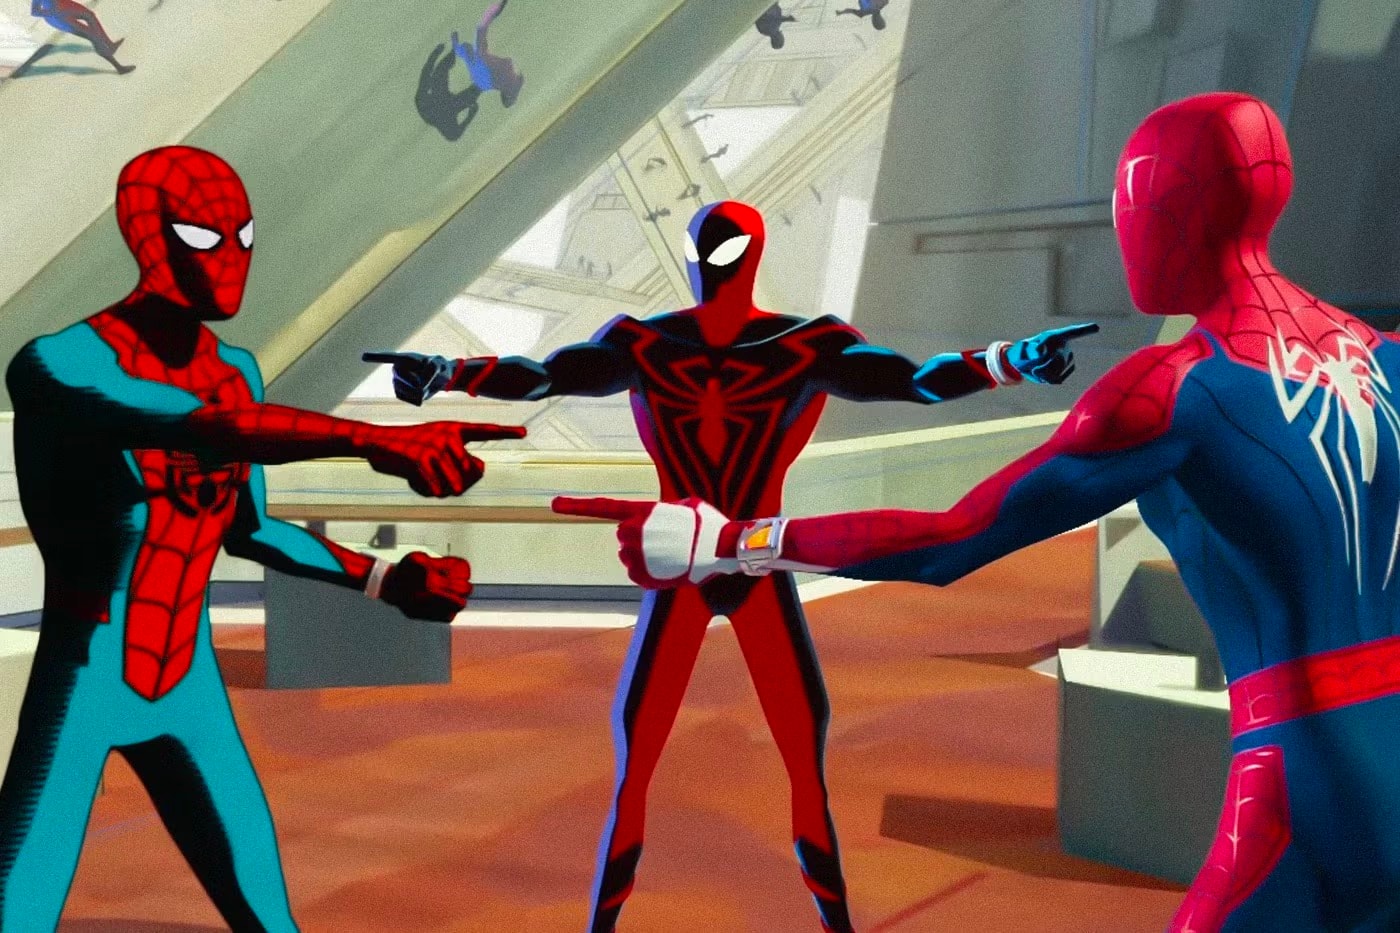 《Spider-Man》最新动画大作《蜘蛛侠：纵横宇宙》首周全球票房突破 $2 亿美元